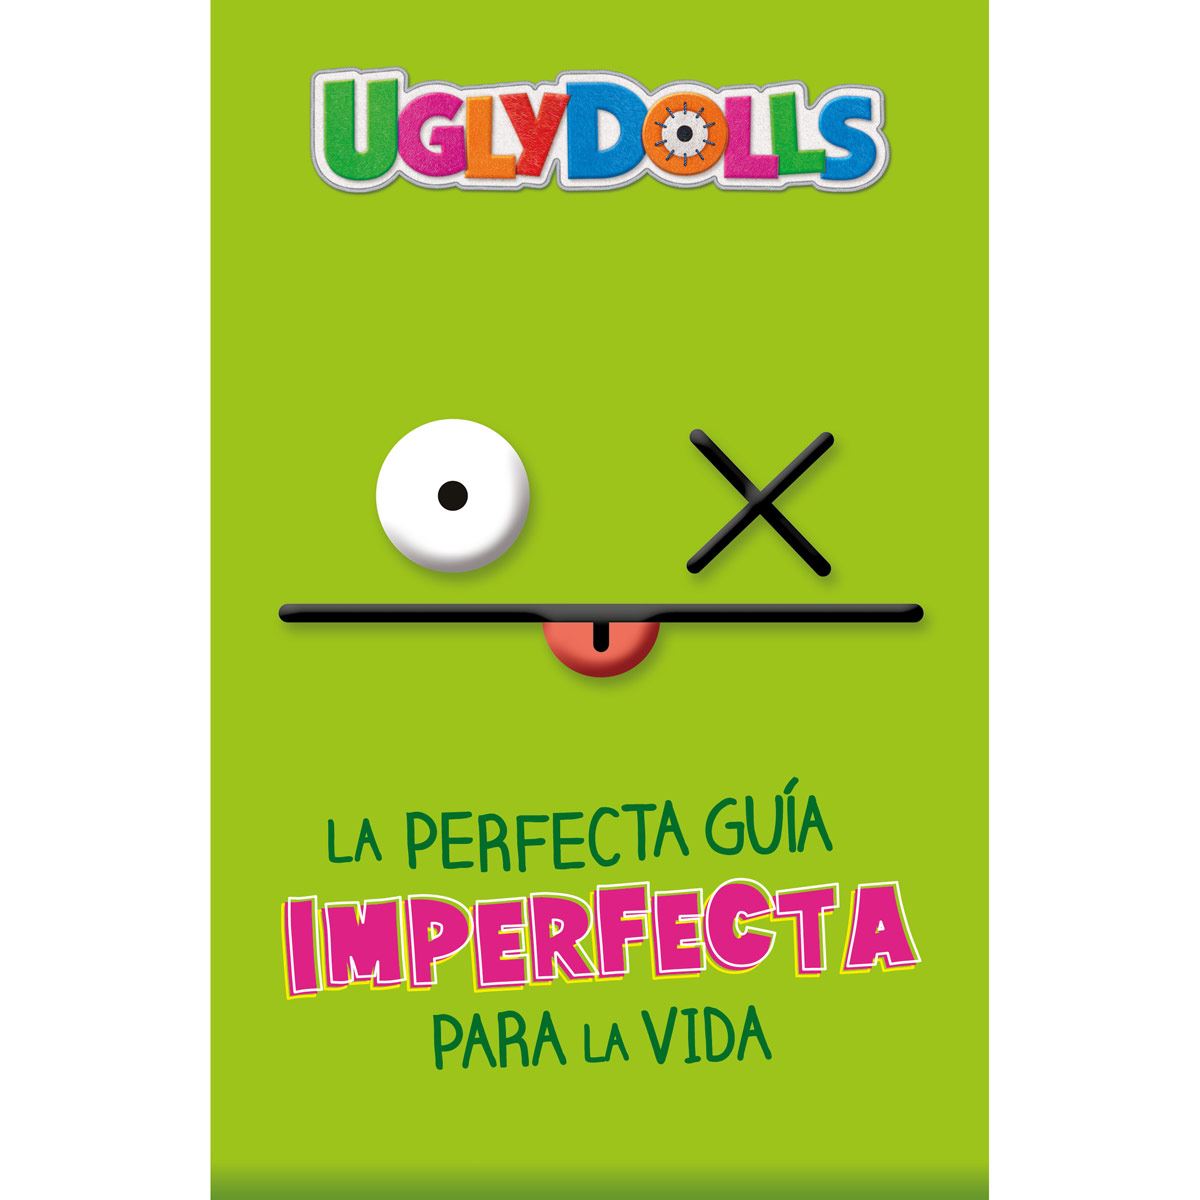 Uglydolls. La perfecta guía imperfecta para la vida